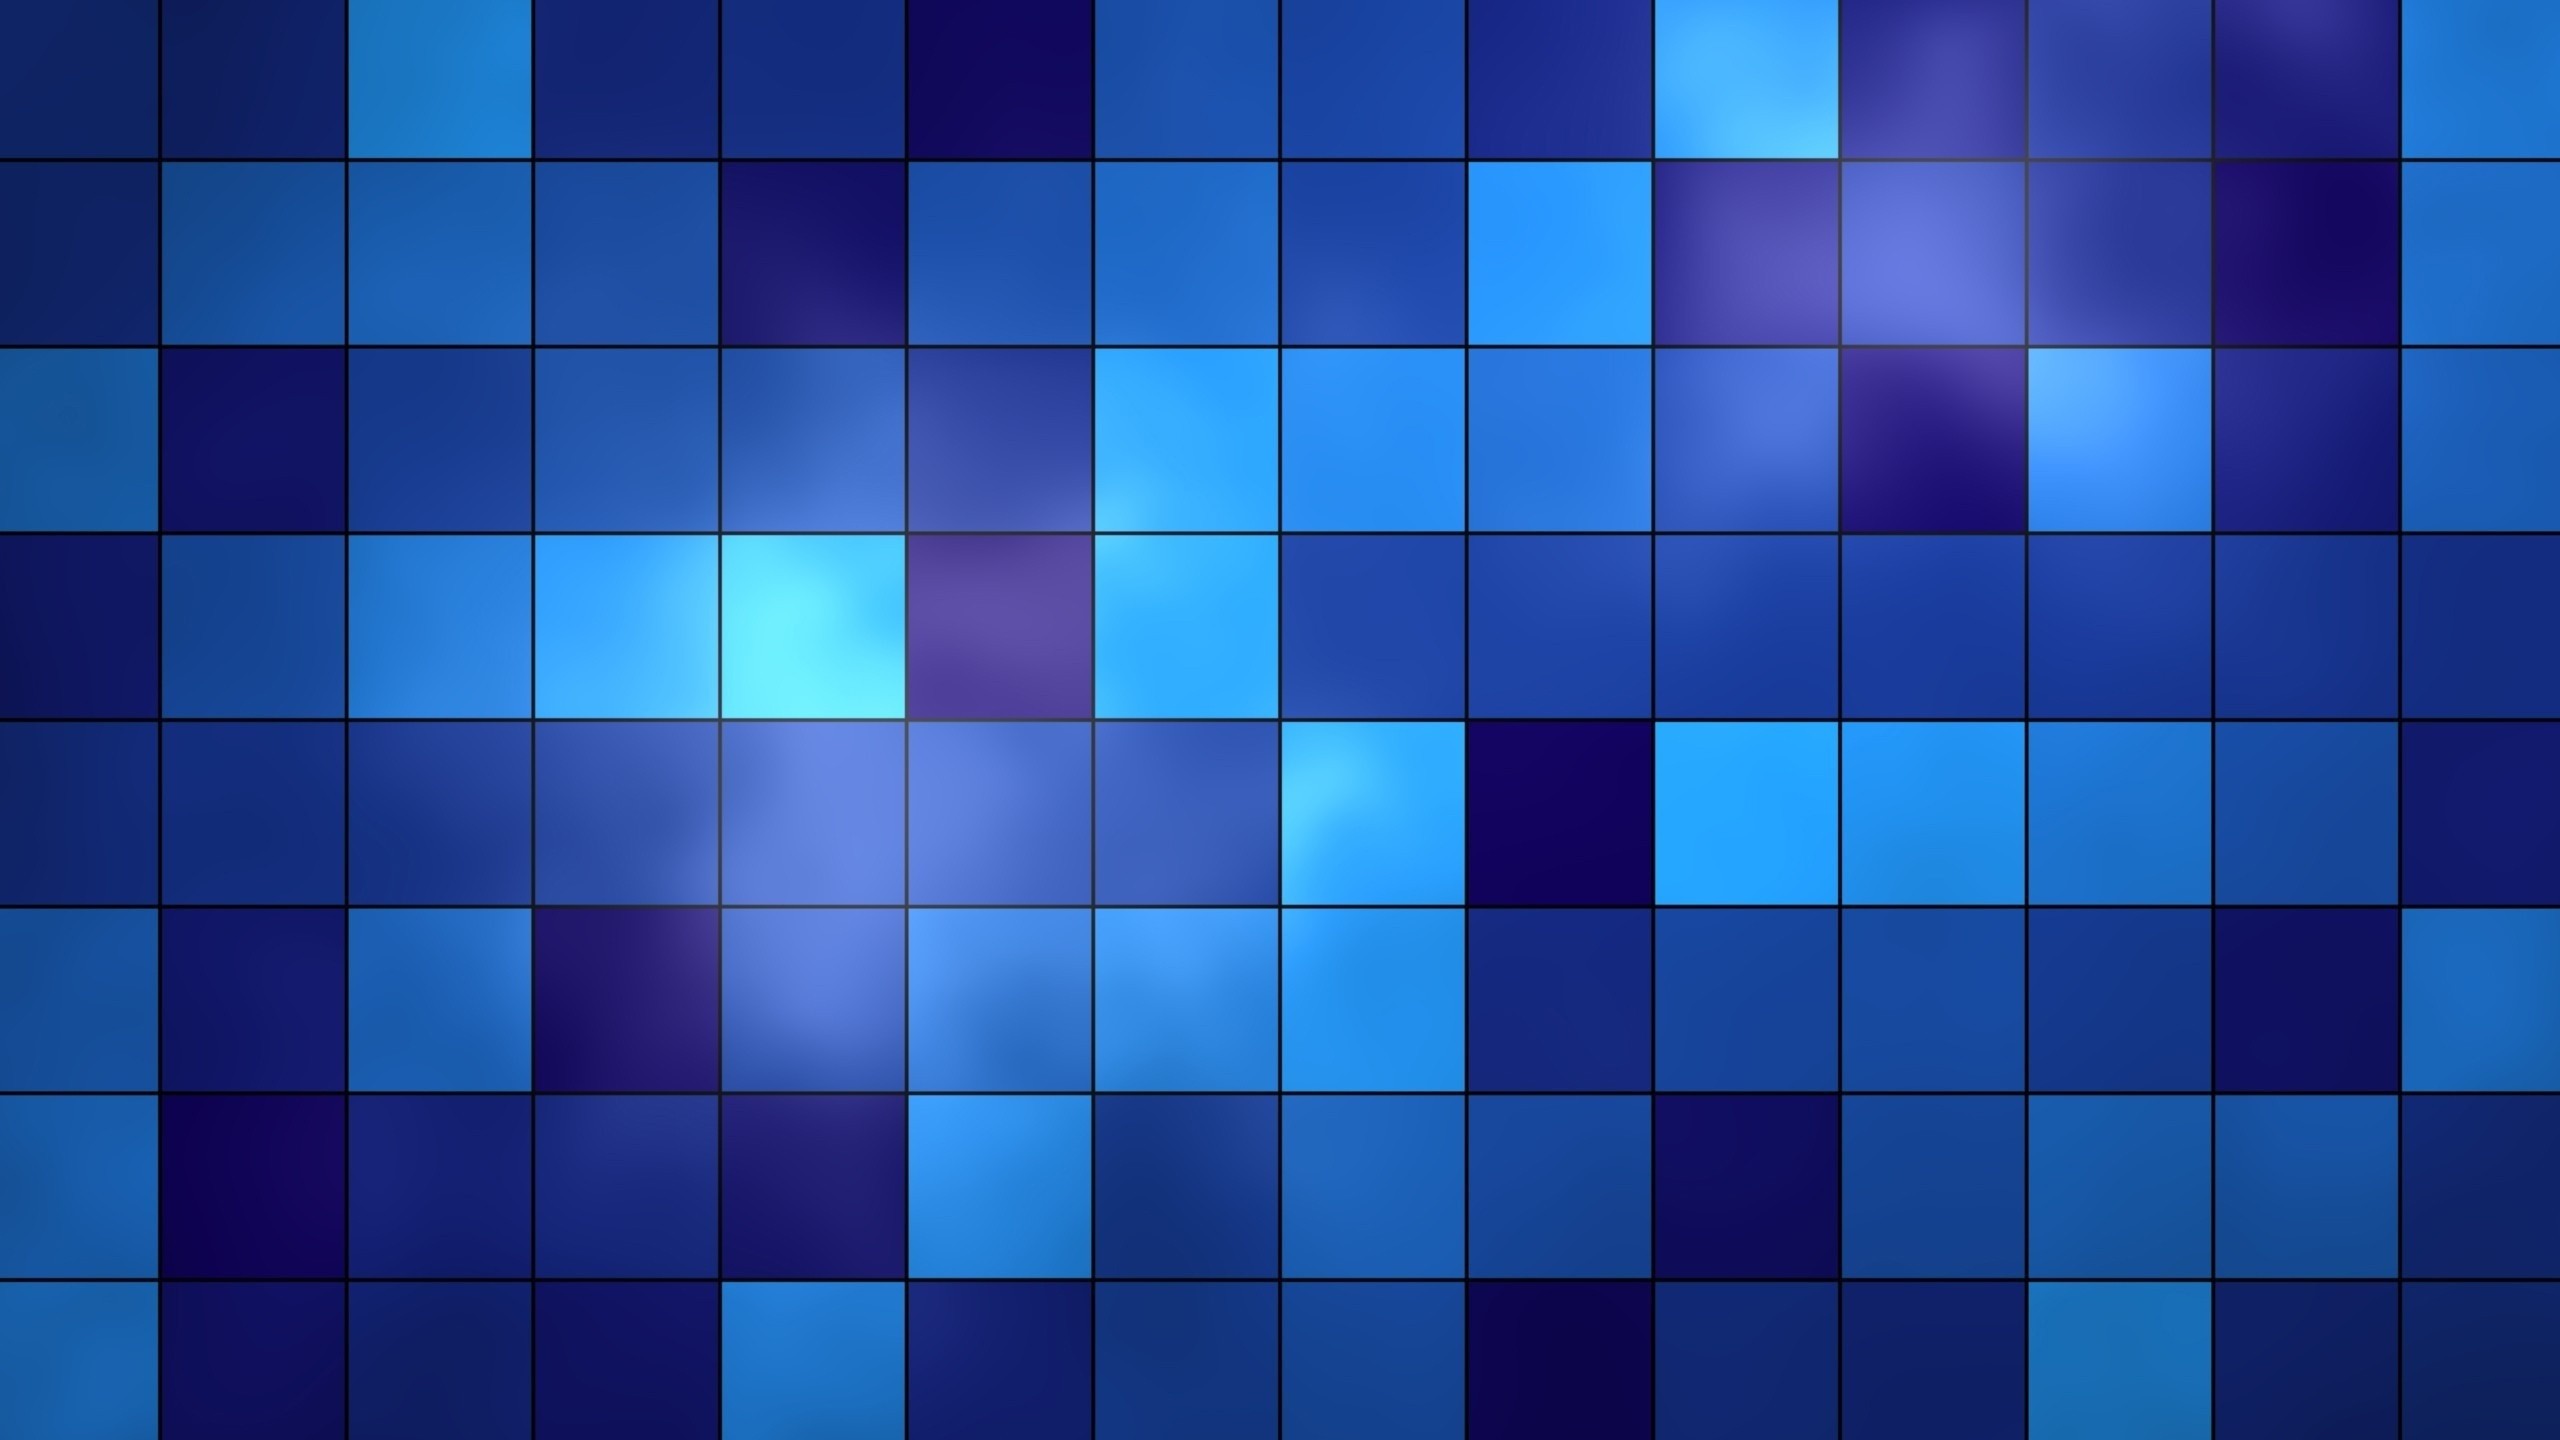 General 2560x1440 geometry blue purple square minimalism grid Digital Grid gradient CGI digital art